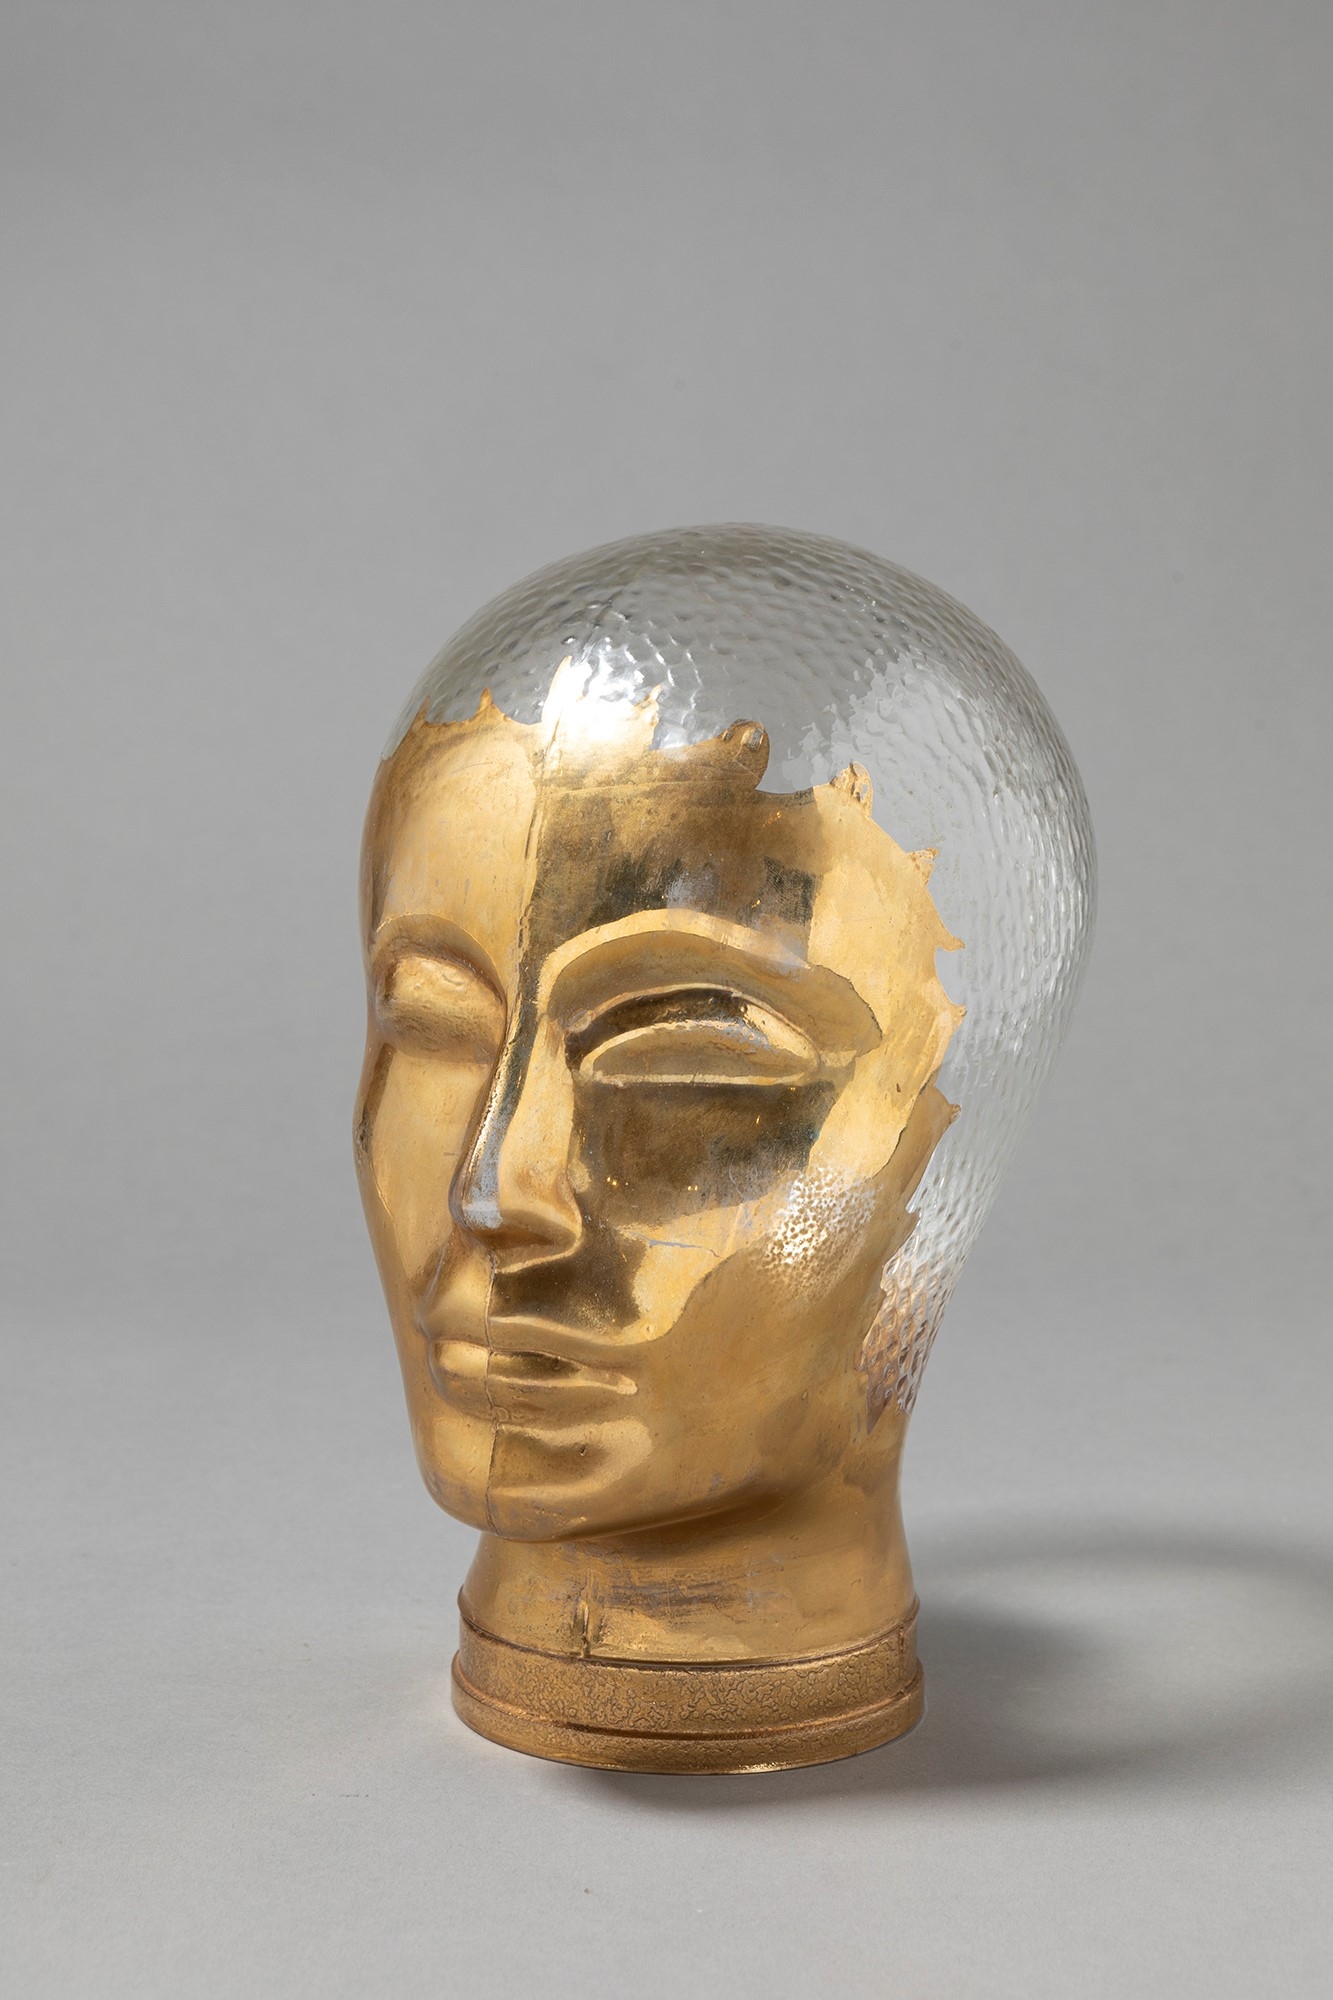 Piero Fornasetti, Glass head (1970)